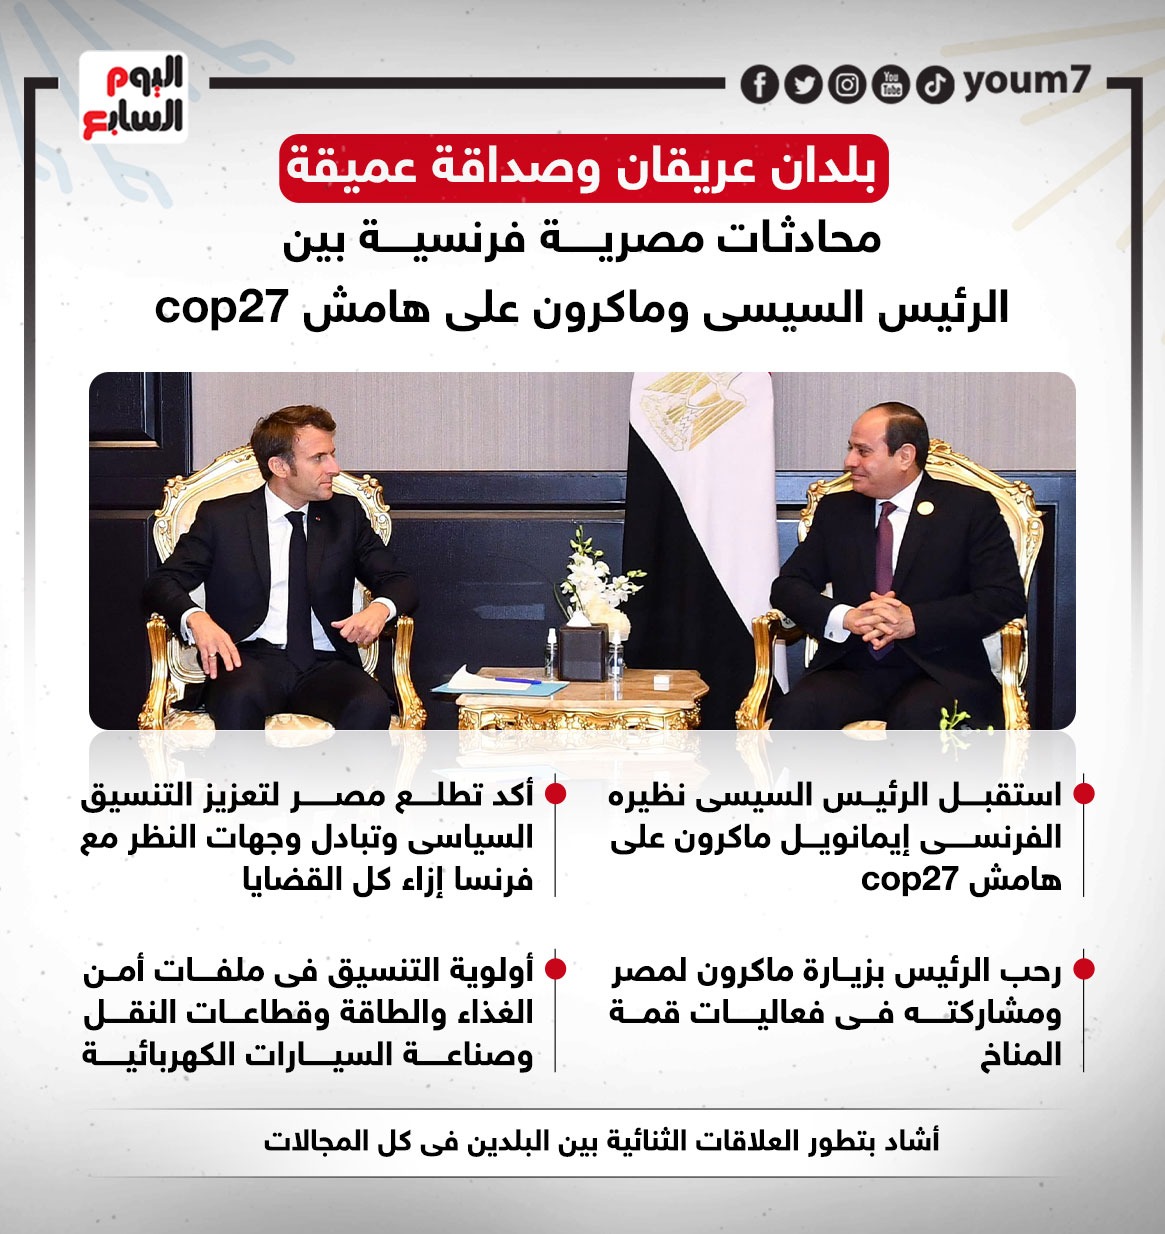 محادثات مصرية فرنسية بين الرئيس السيسى وماكرون على هامش cop27